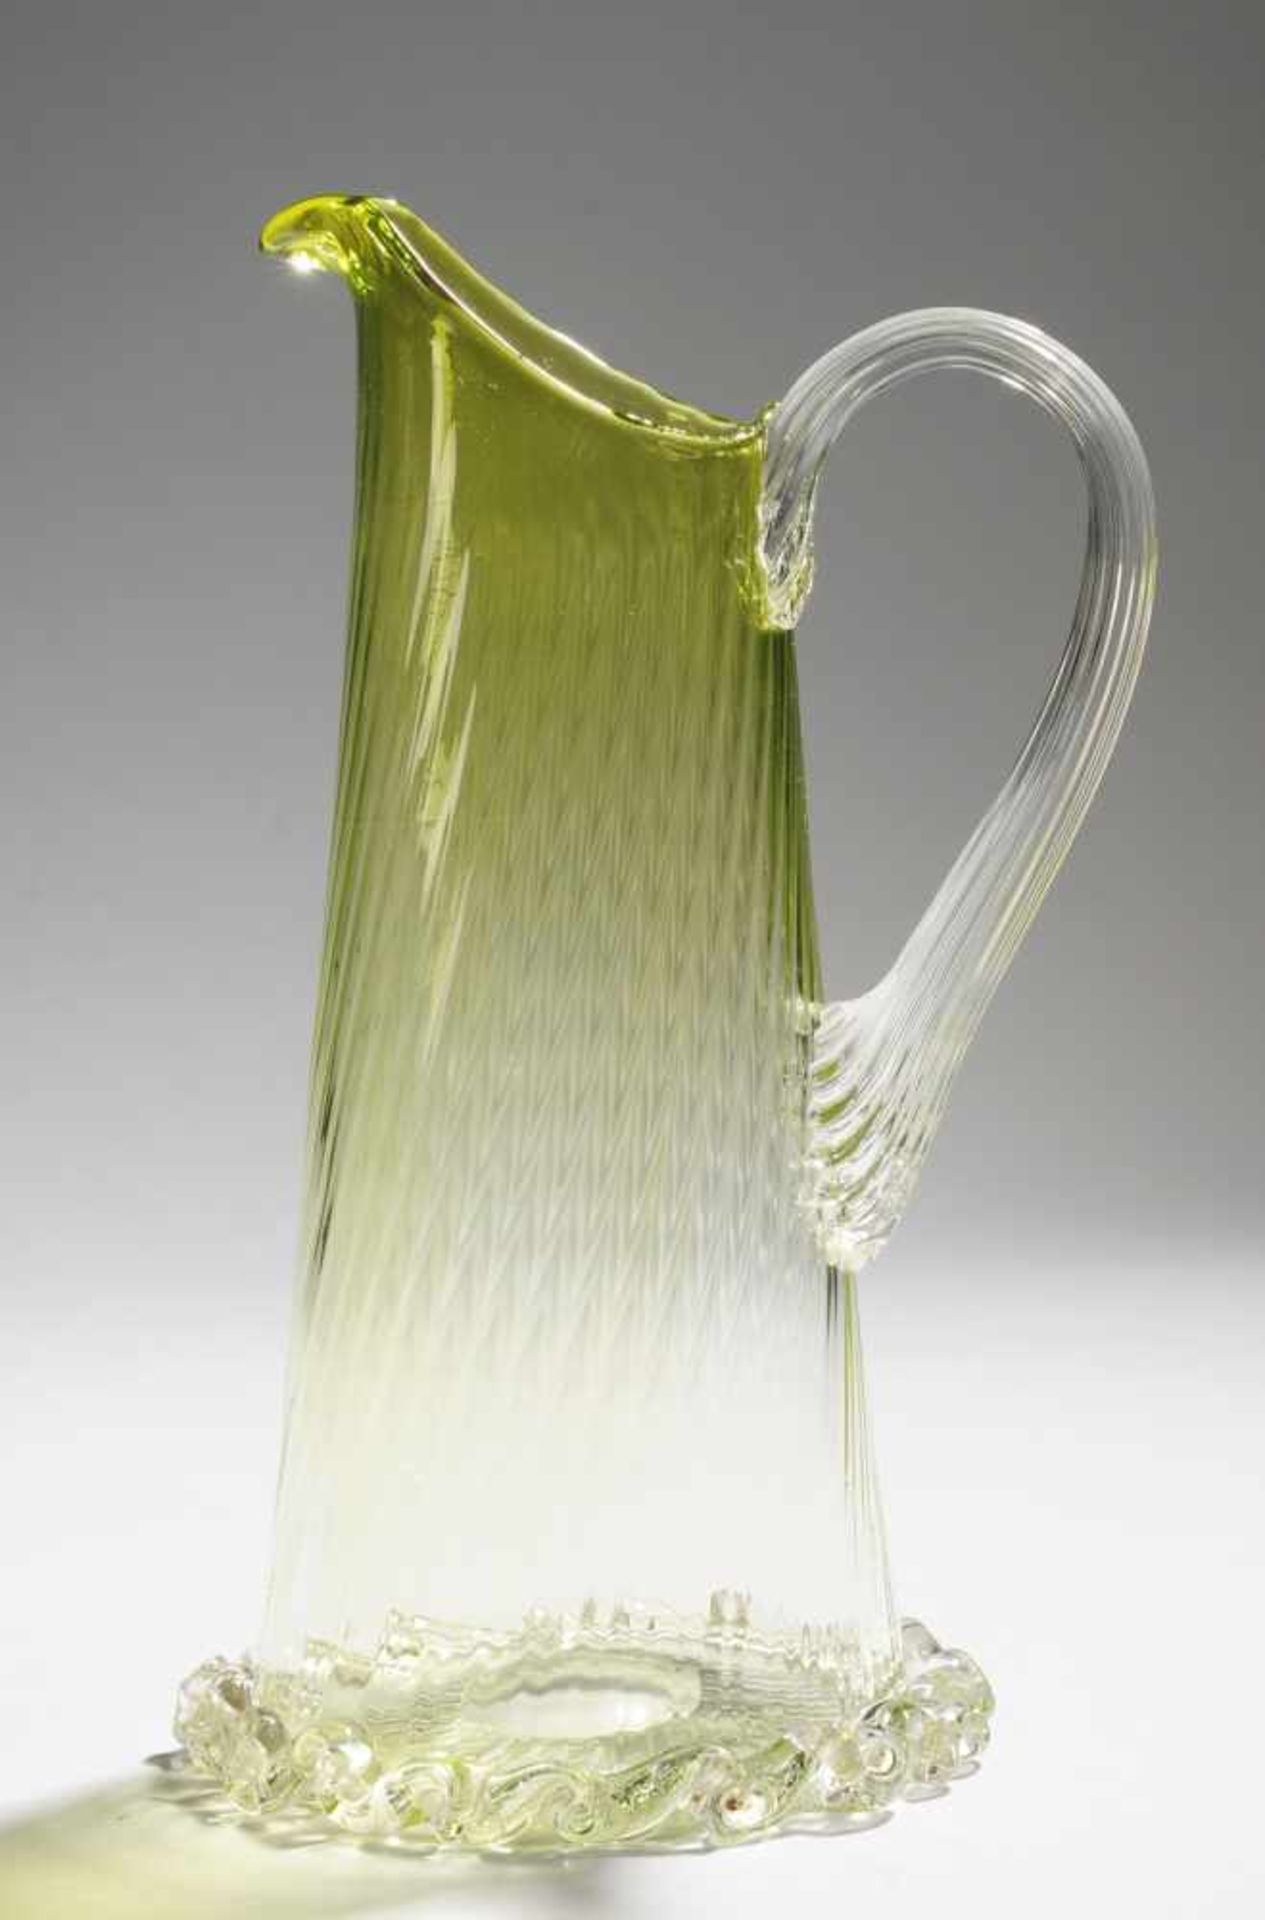 Kleiner HenkelkrugFarbloses u. grünes Glas. Optisch gerippt formgeblasen, ausgekugelter Abriss.